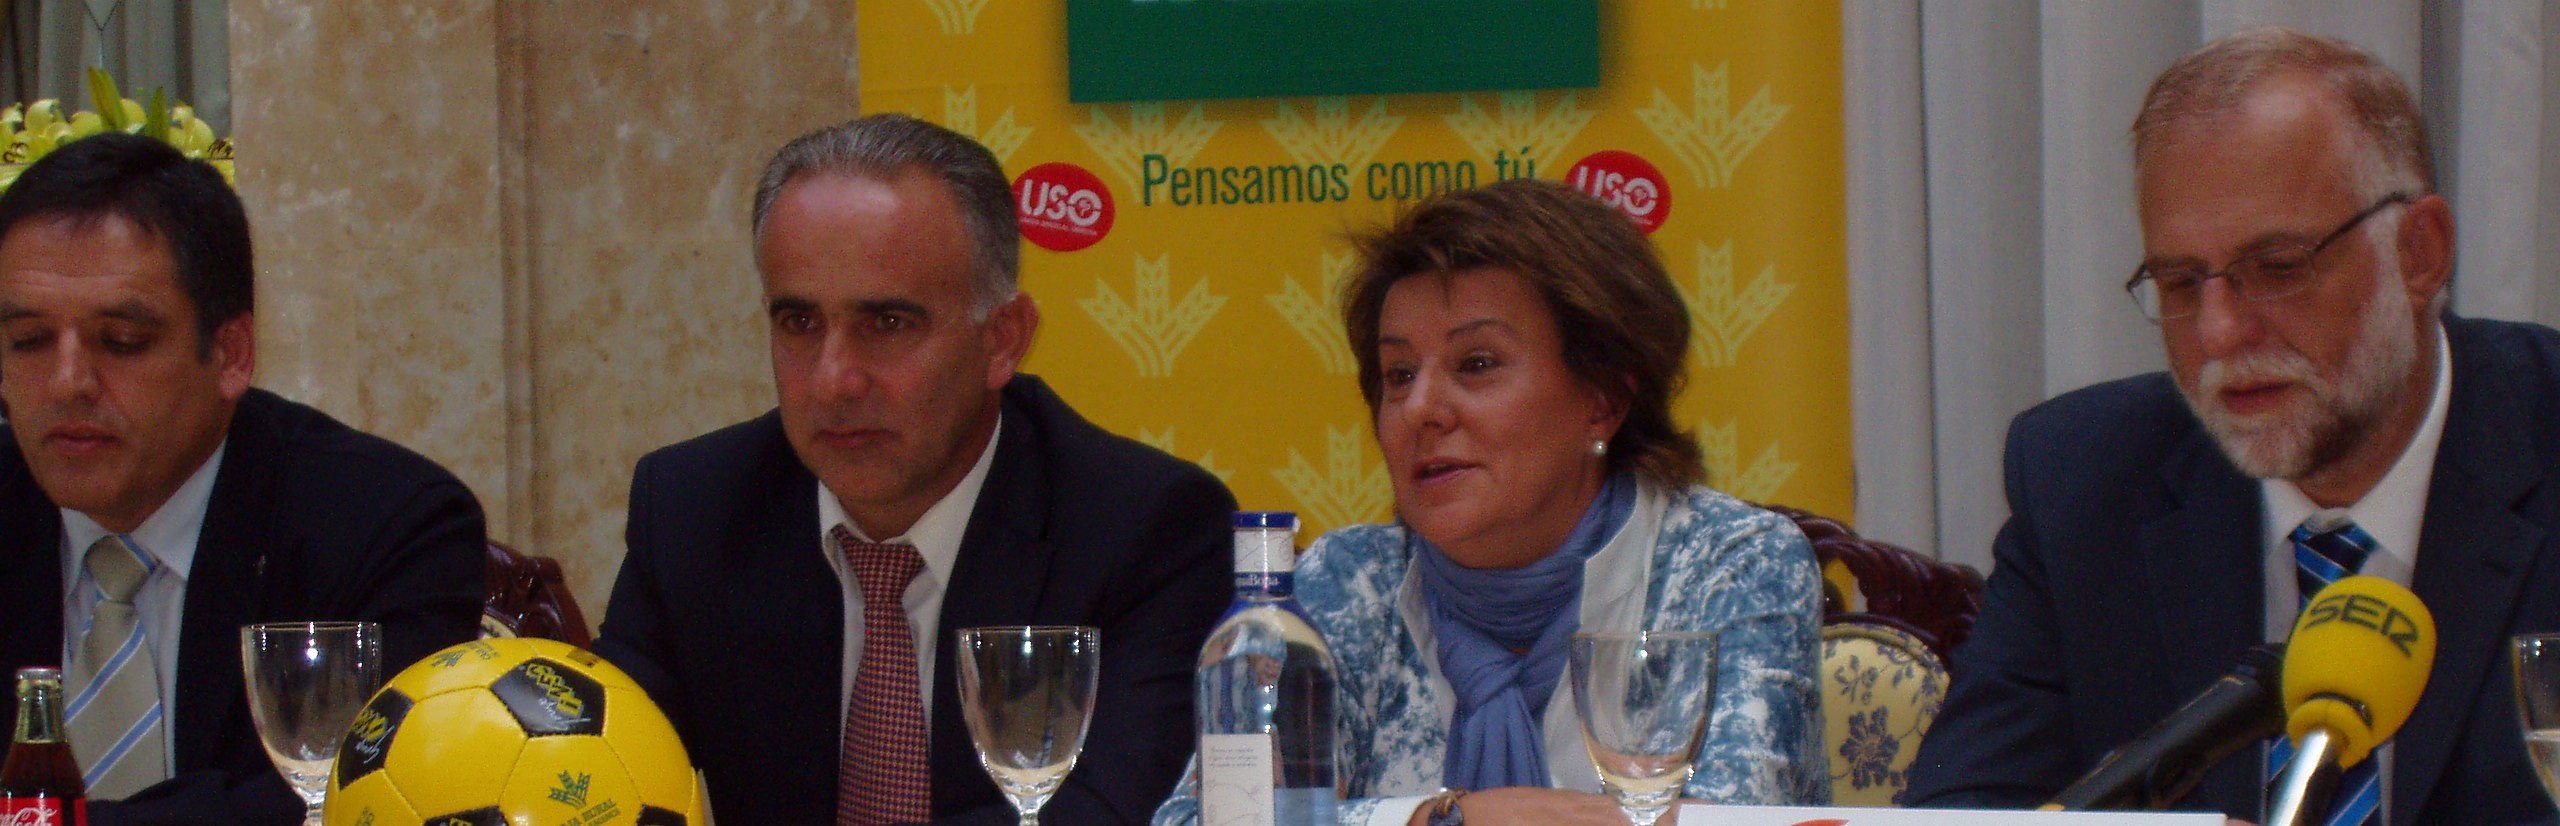 María Victoria Gil Díaz presidenta de Aviva en la rueda de prensa sobre deporte y salud